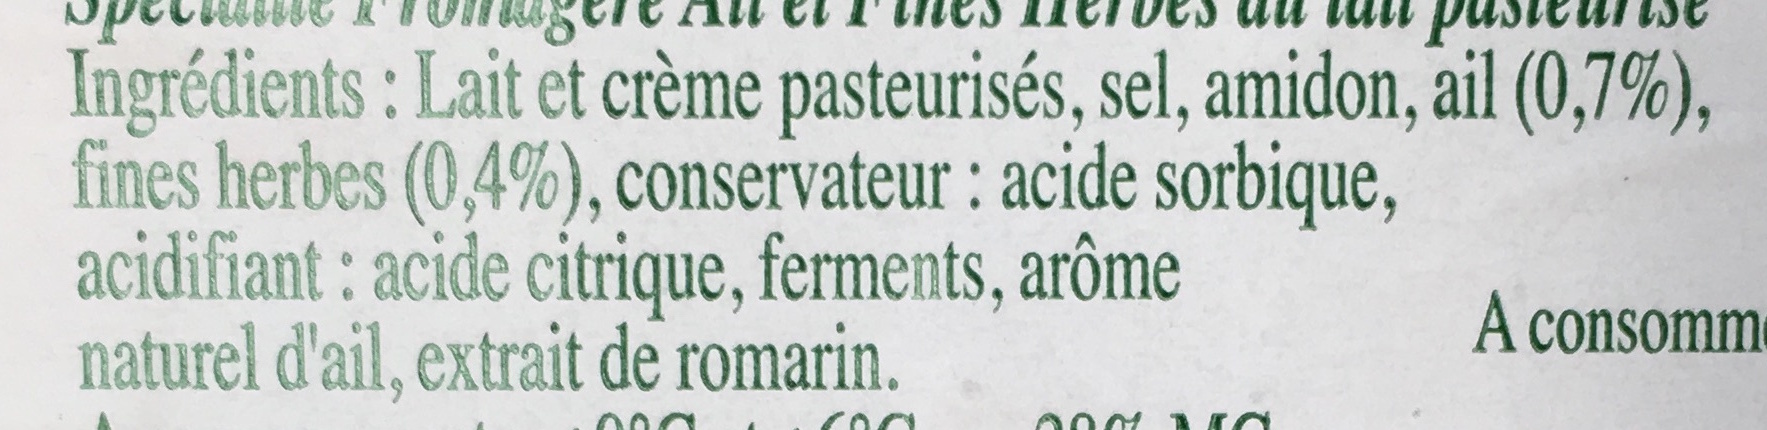 Le Roulé Ail & Fines Herbes (28% MG) - Ingrédients